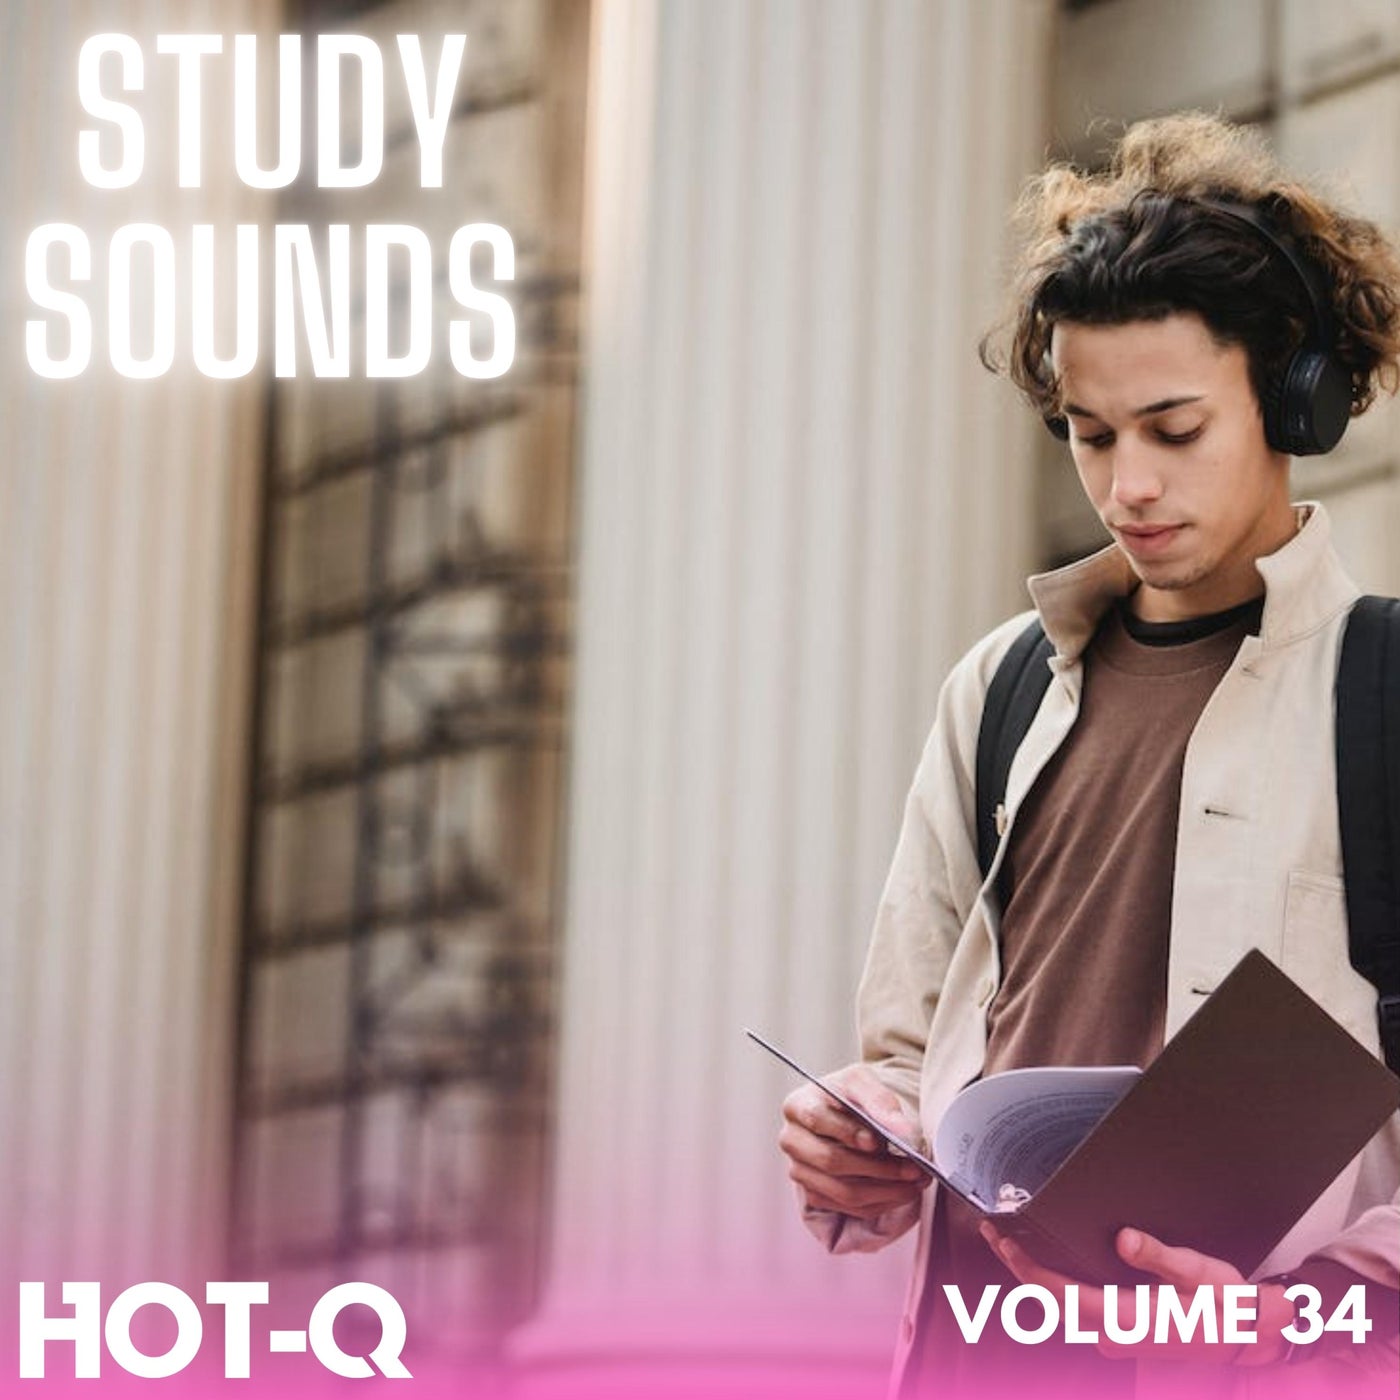 Study Sounds 034